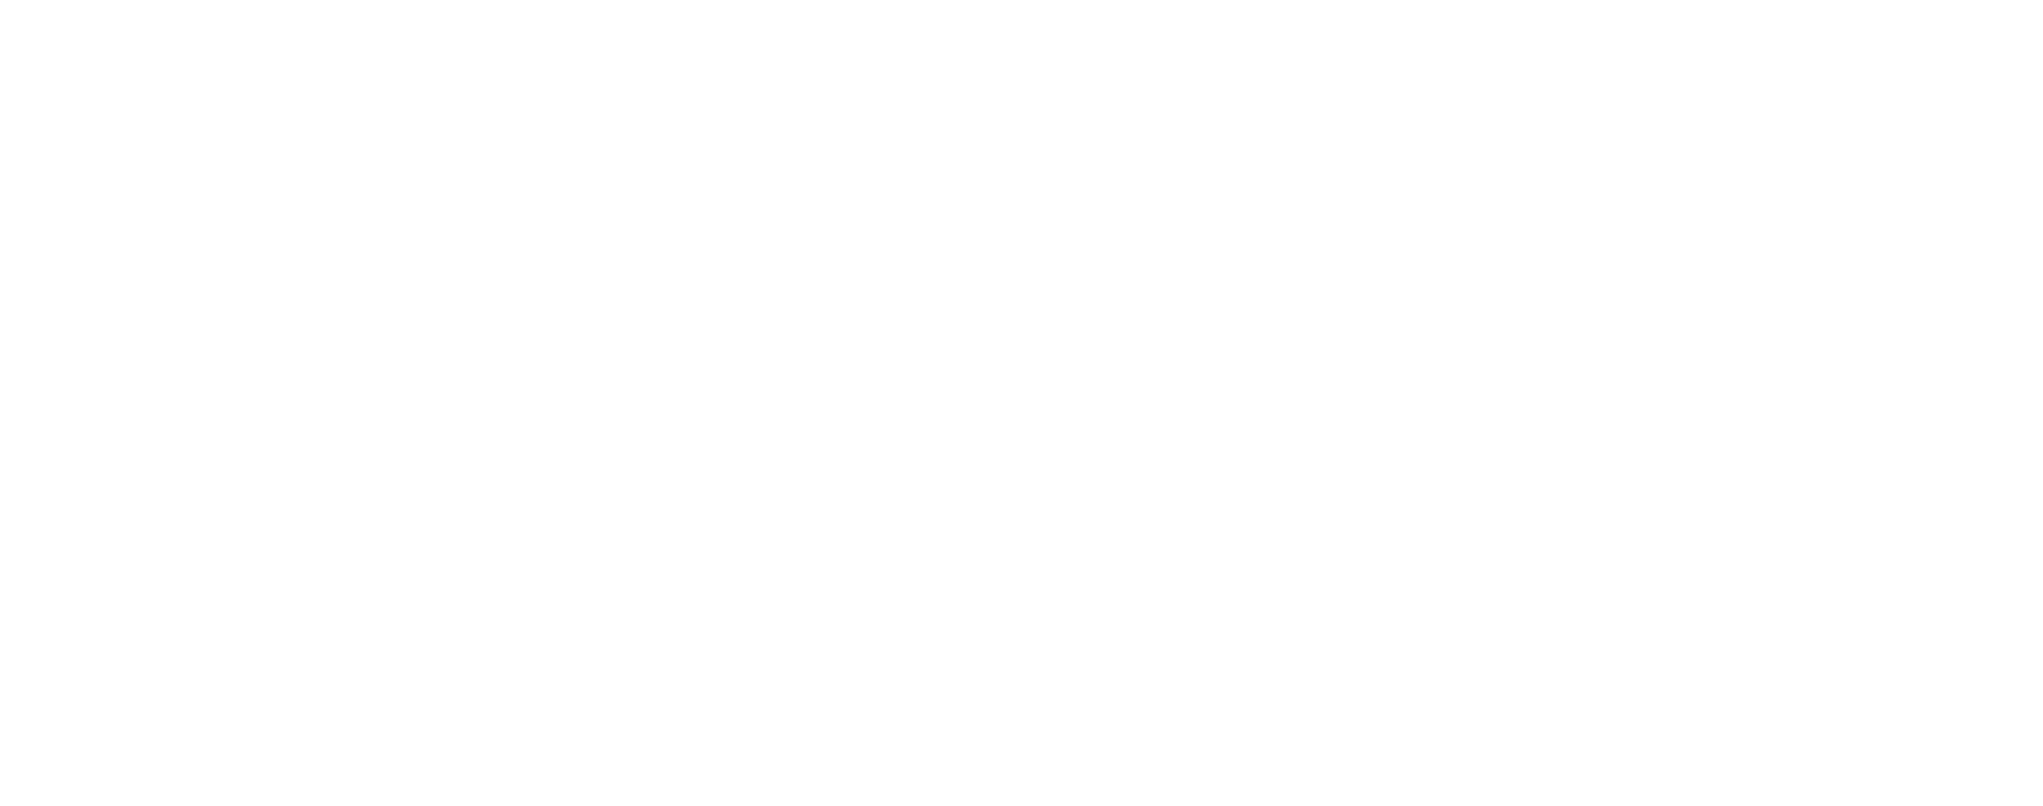 Aesthetics-Magazine